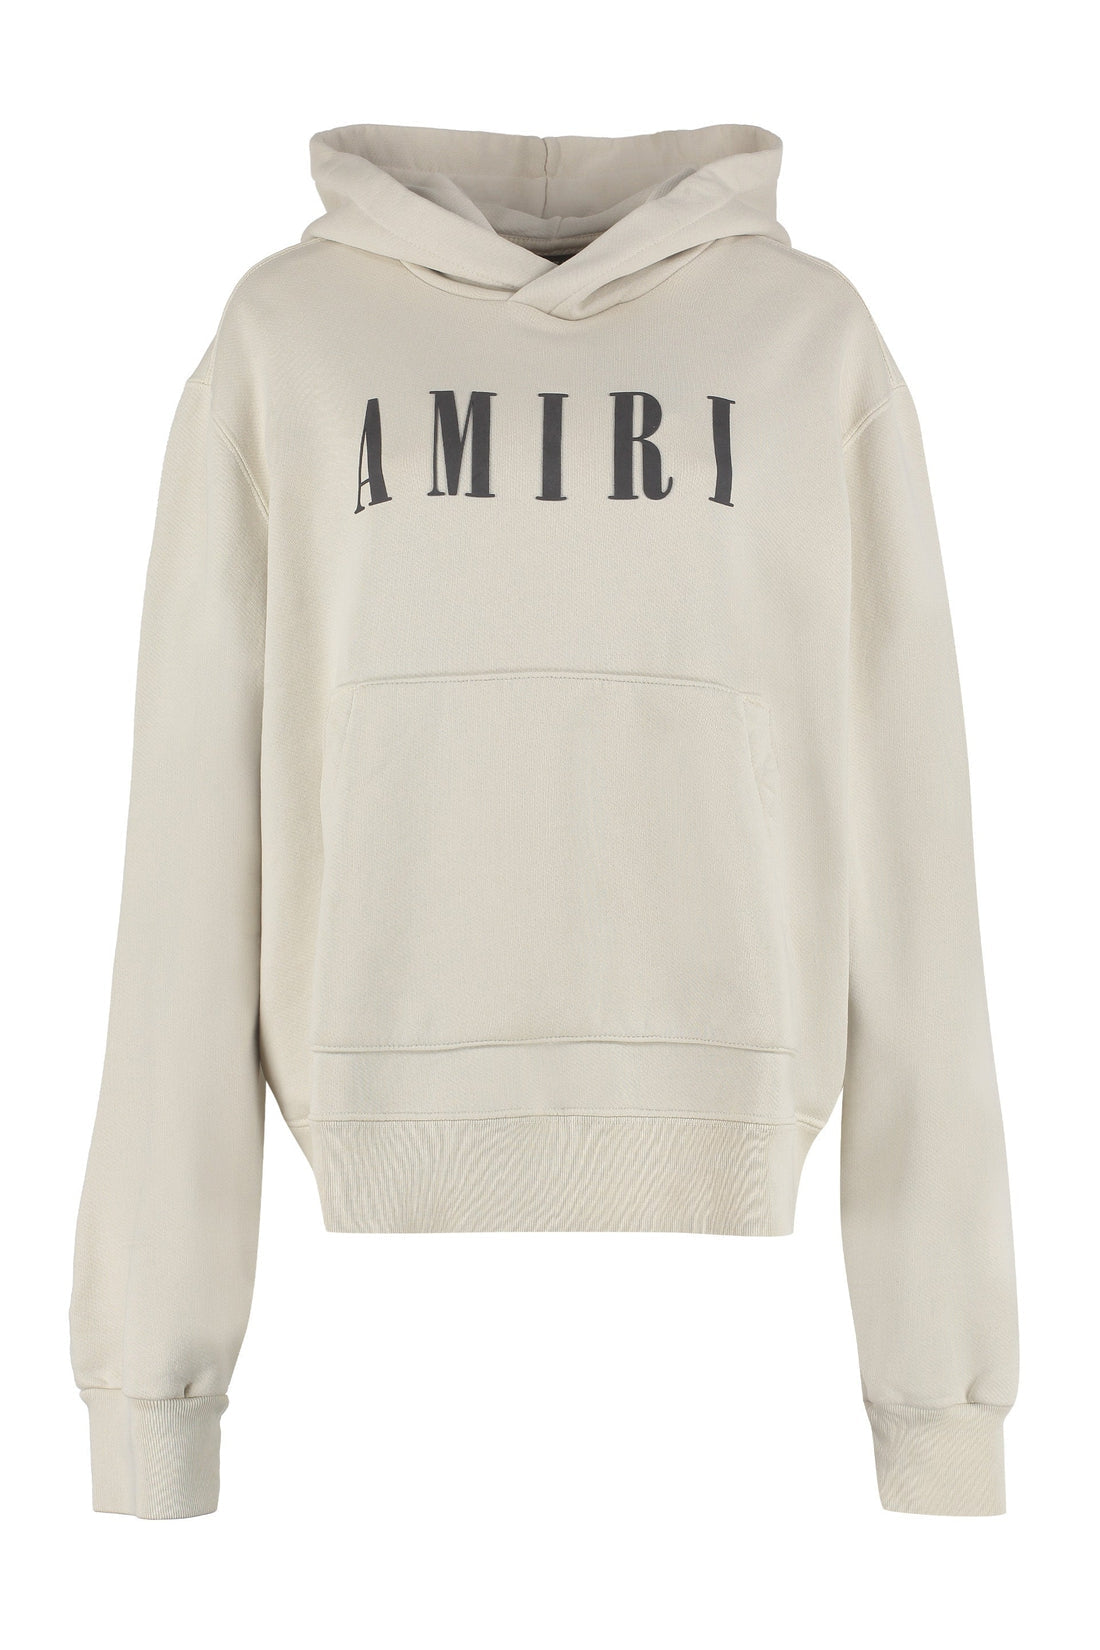 AMIRI-OUTLET-SALE-Logo cotton hoodie-ARCHIVIST